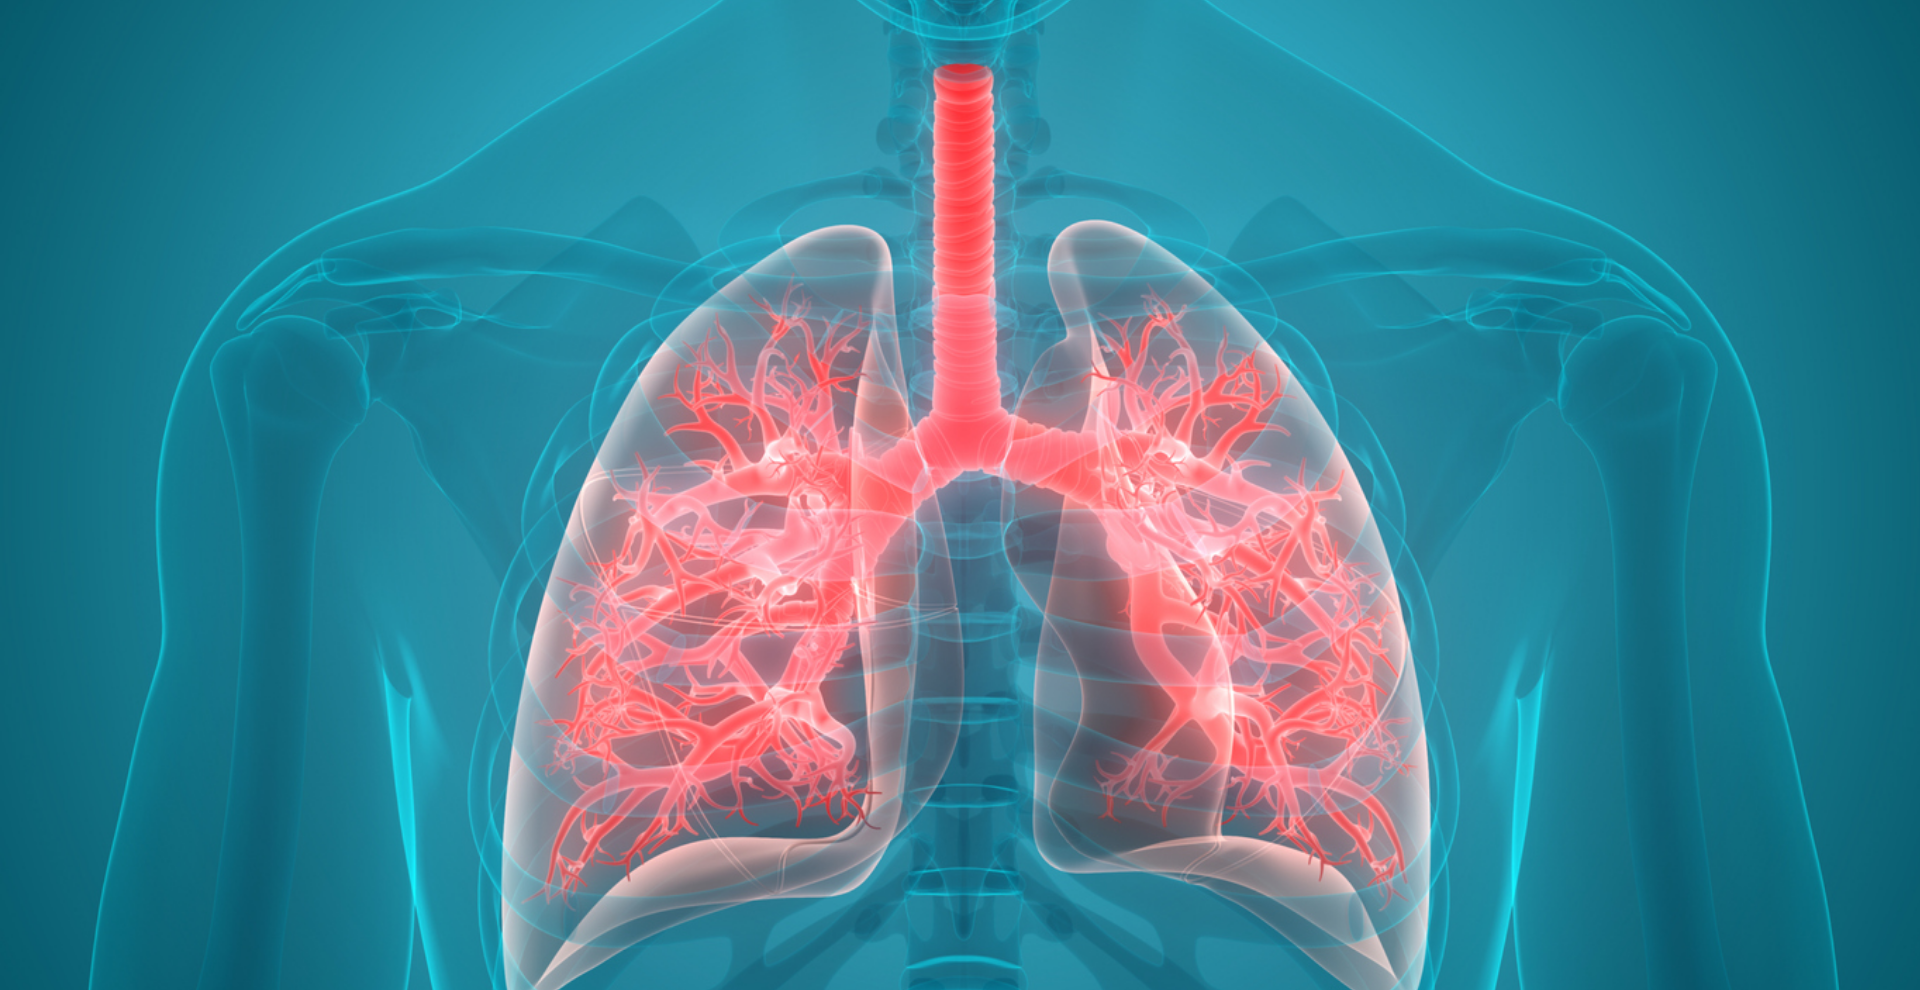 Verhelp je ademhalingsproblematiek bij fysiotherapie De Hofstede in Beuningen